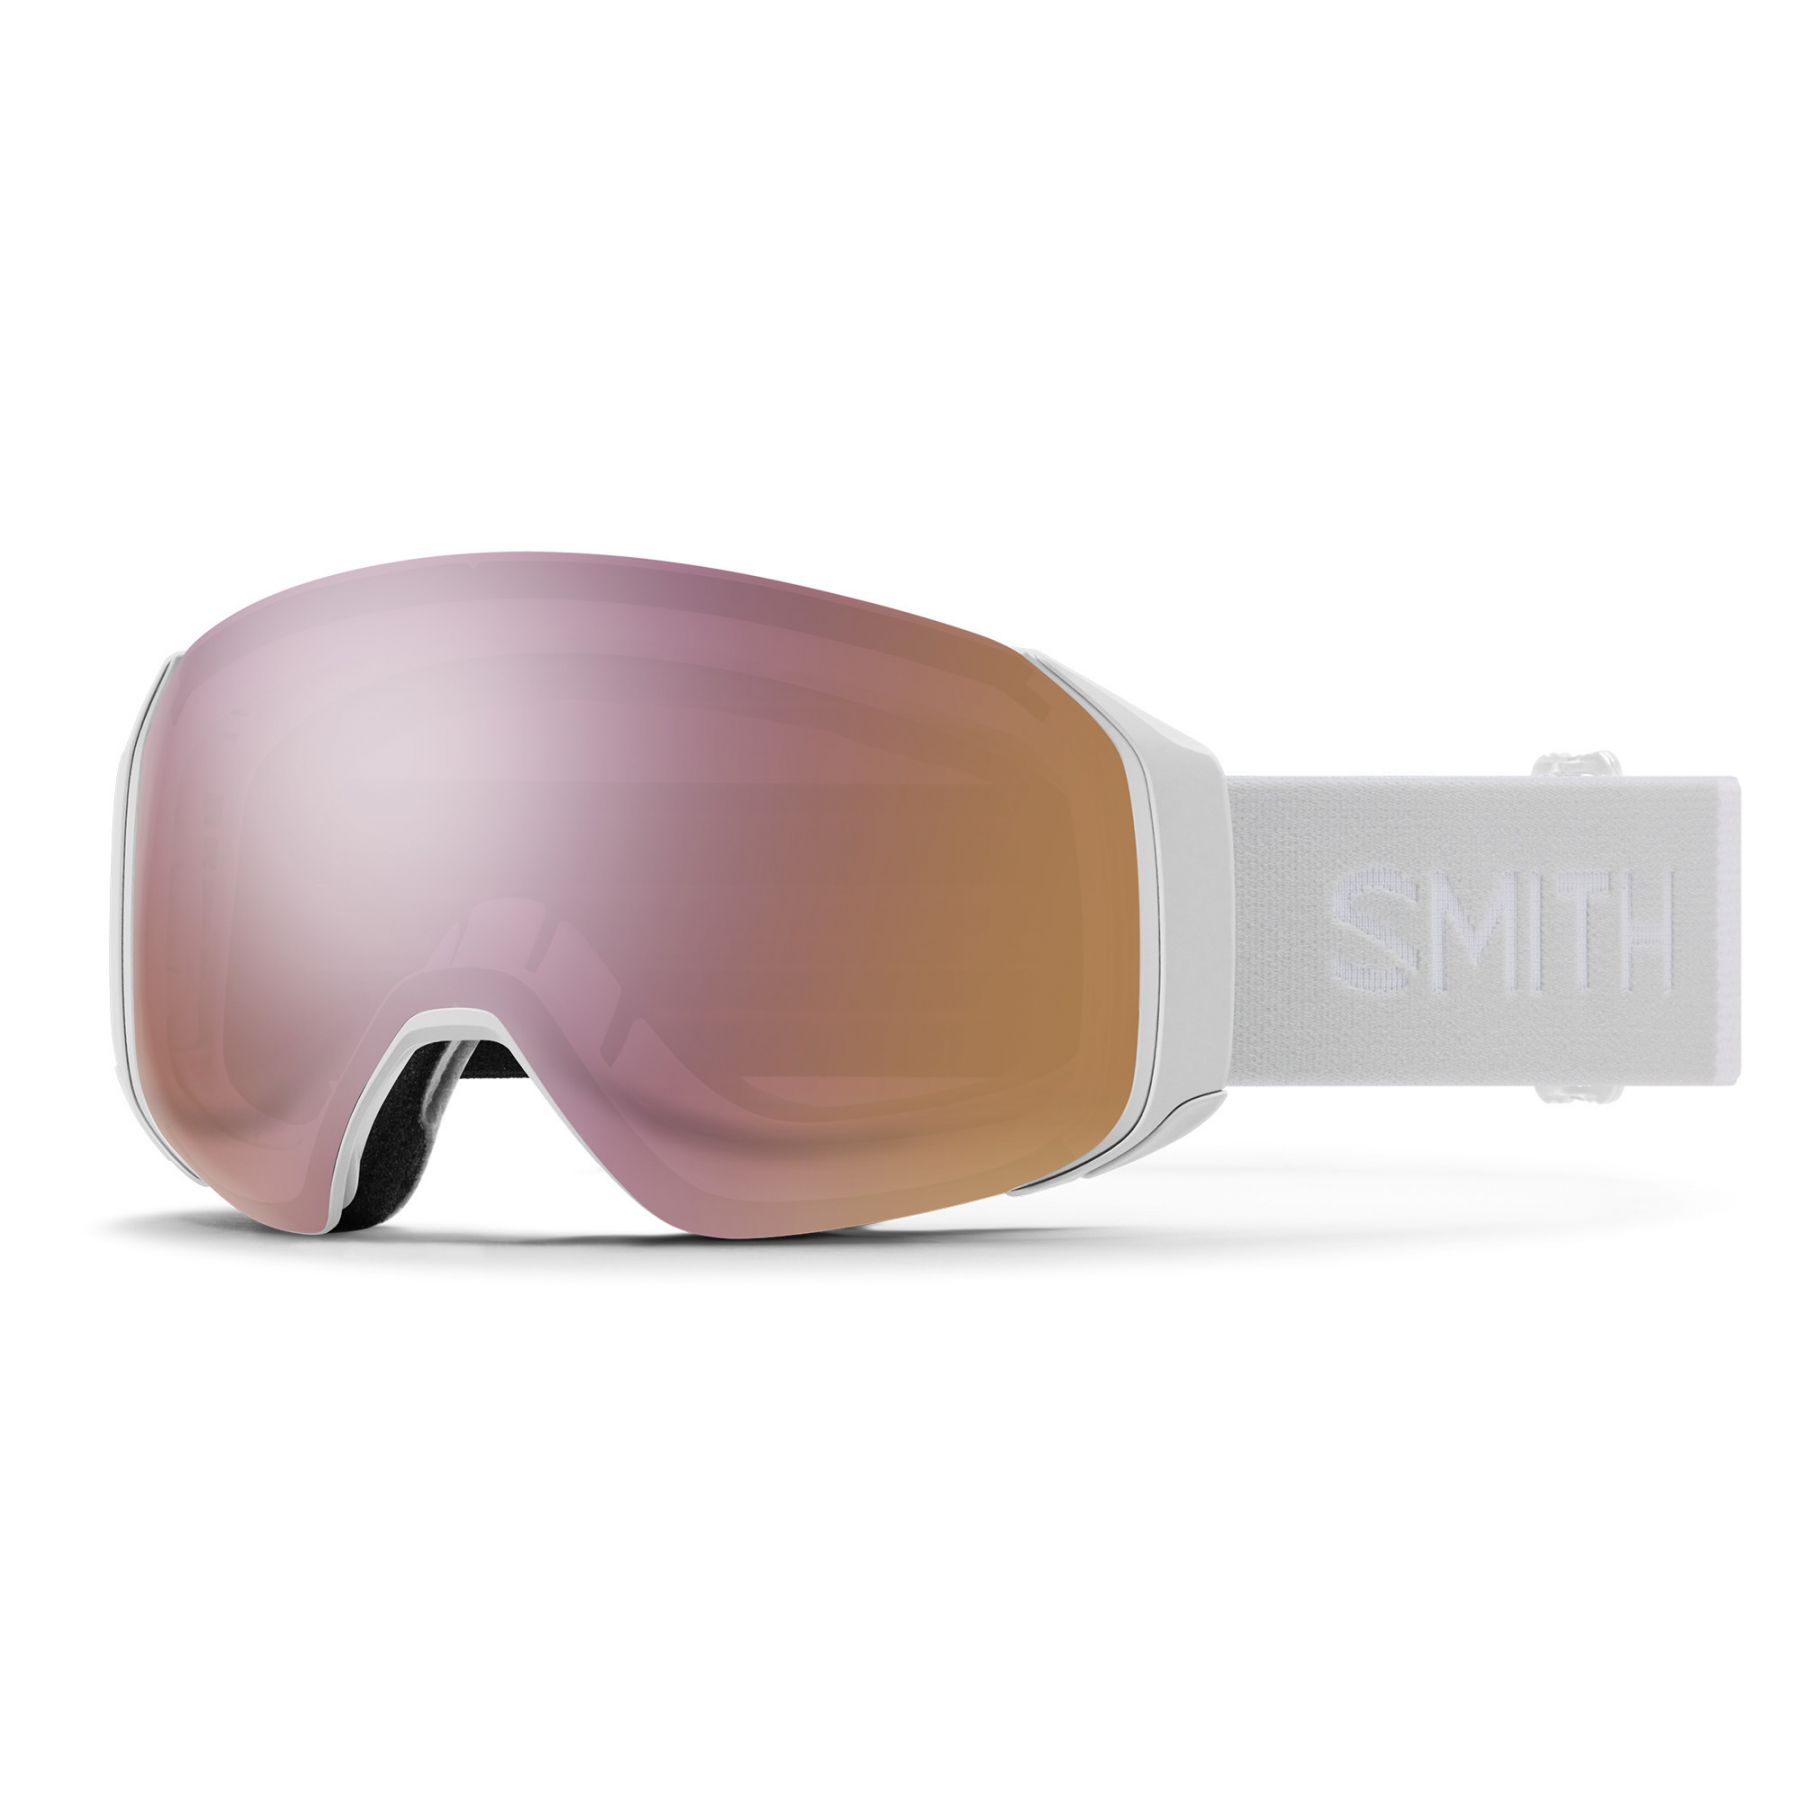 Billede af Smith 4D MAG S, skibrille, hvid hos AktivVinter.dk